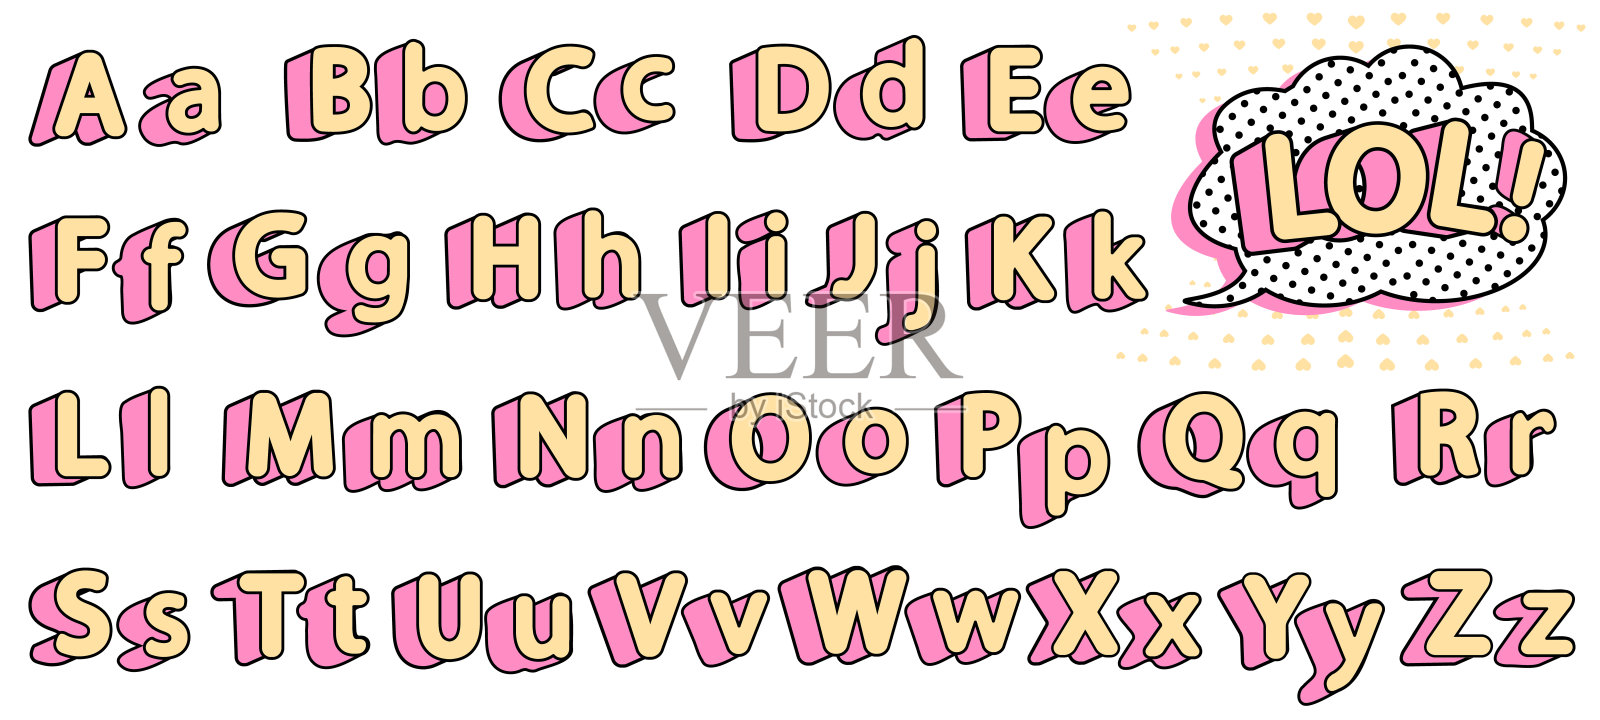 一套可爱的lol娃娃字母表。黄色的字母加上粉红色的阴影，代表“小公主”。插画图片素材